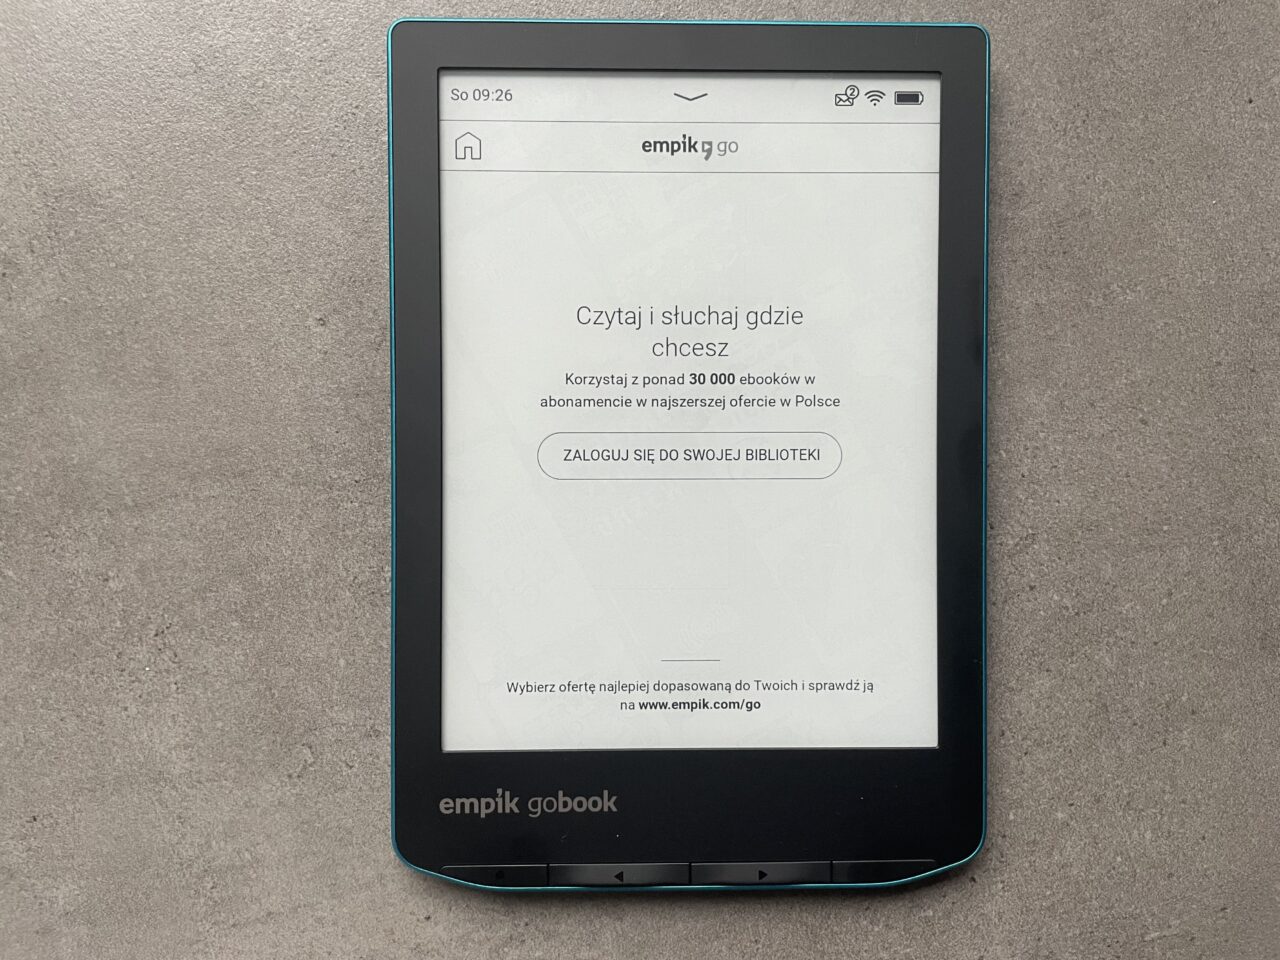 Czytnik ebooków leżący na szarym tle wyświetla ekran startowy z reklamą usługi empik go.